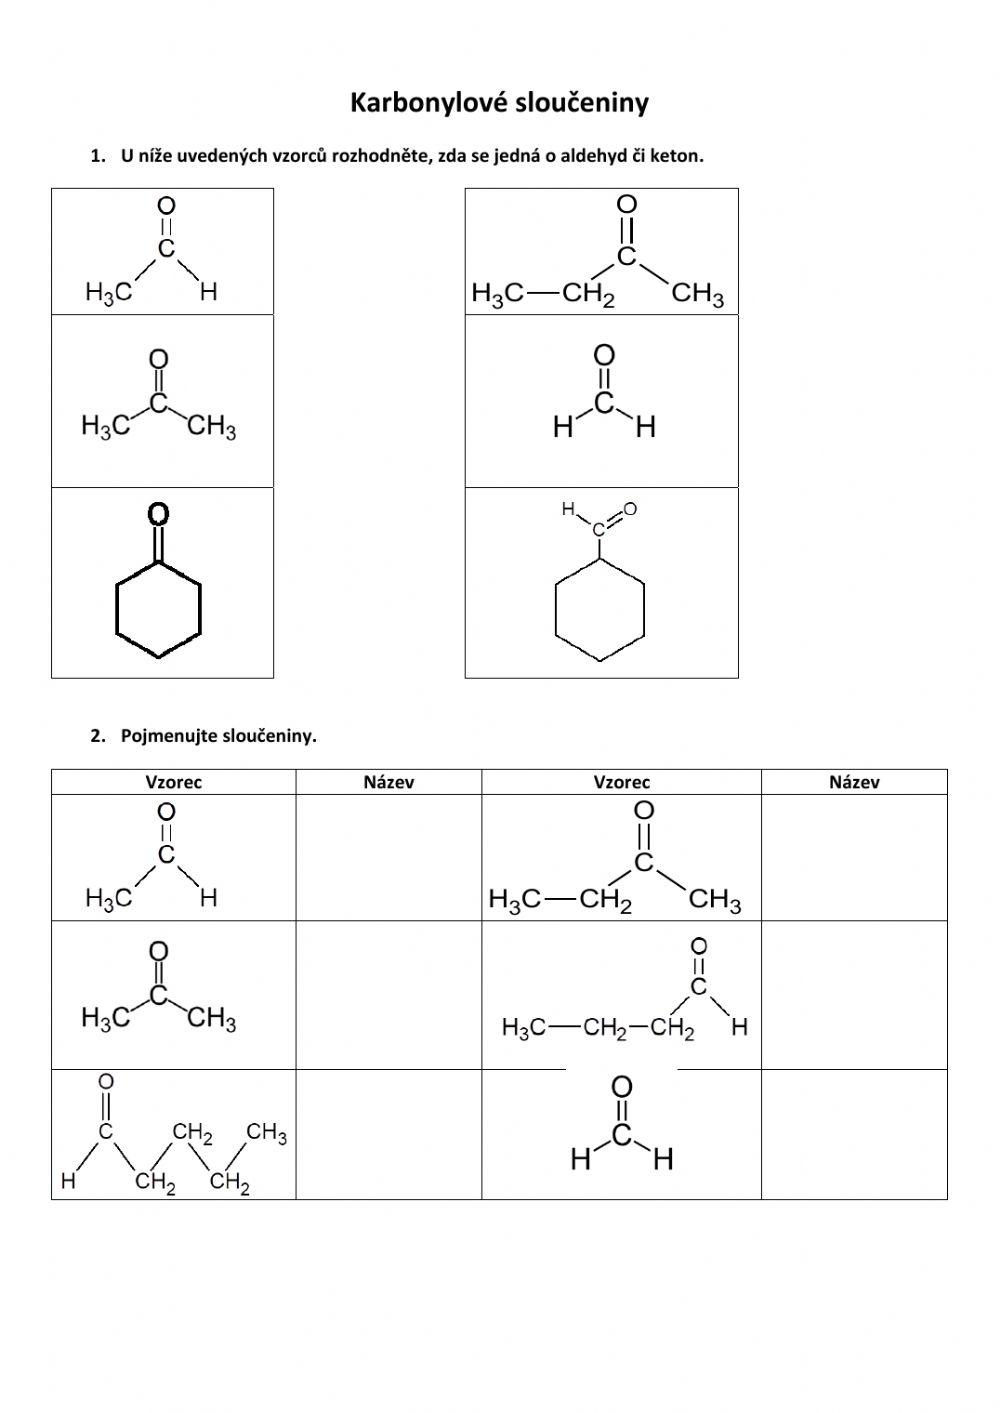 Karbonylové sloučeniny - úvod